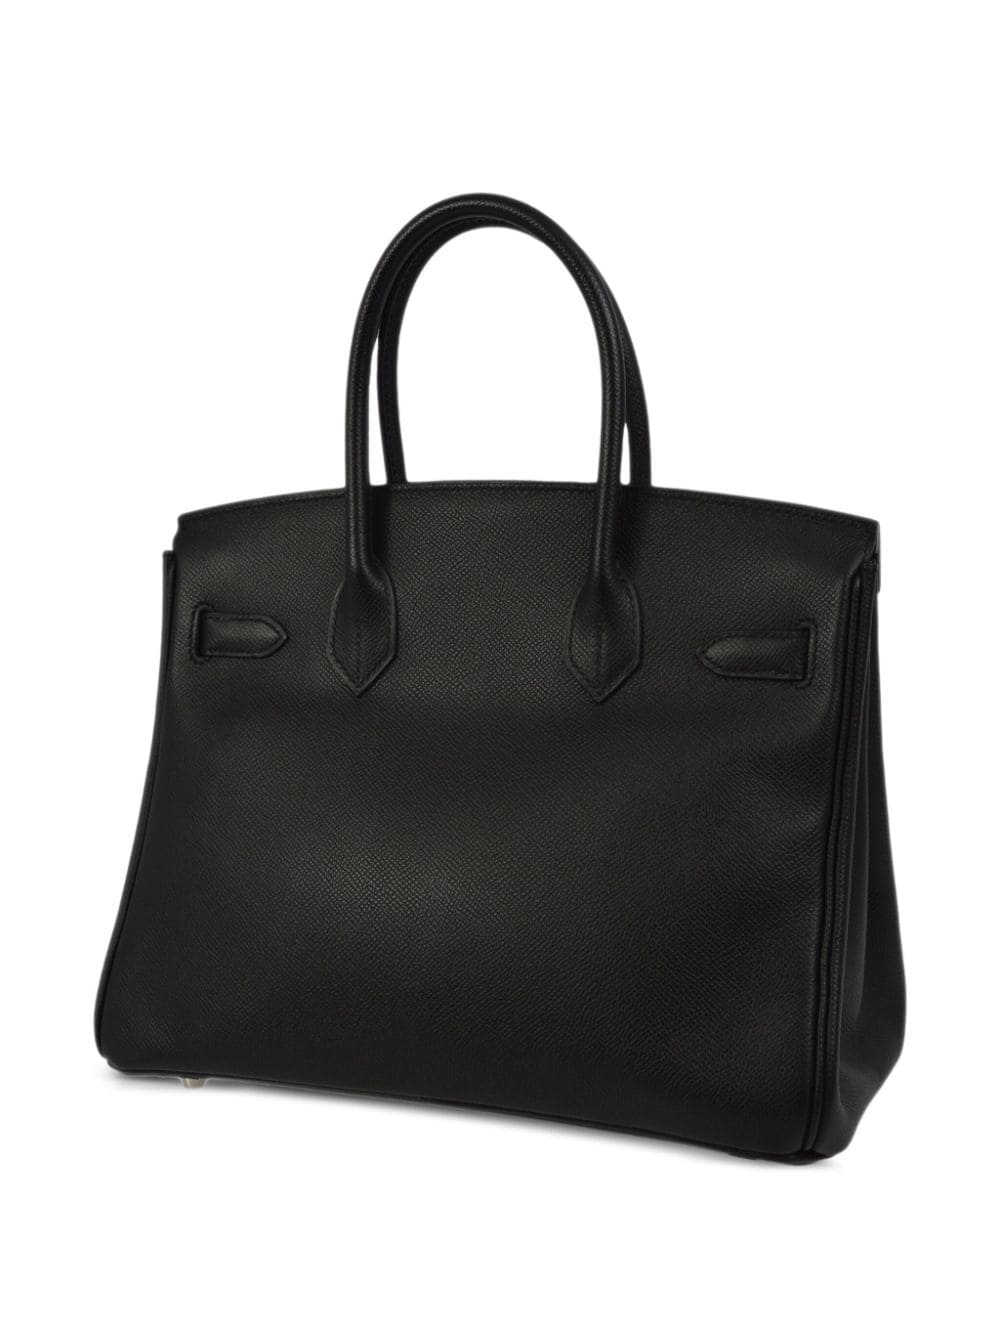 Pre-owned Hermes 2010 Birkin 30 Handbag In Black